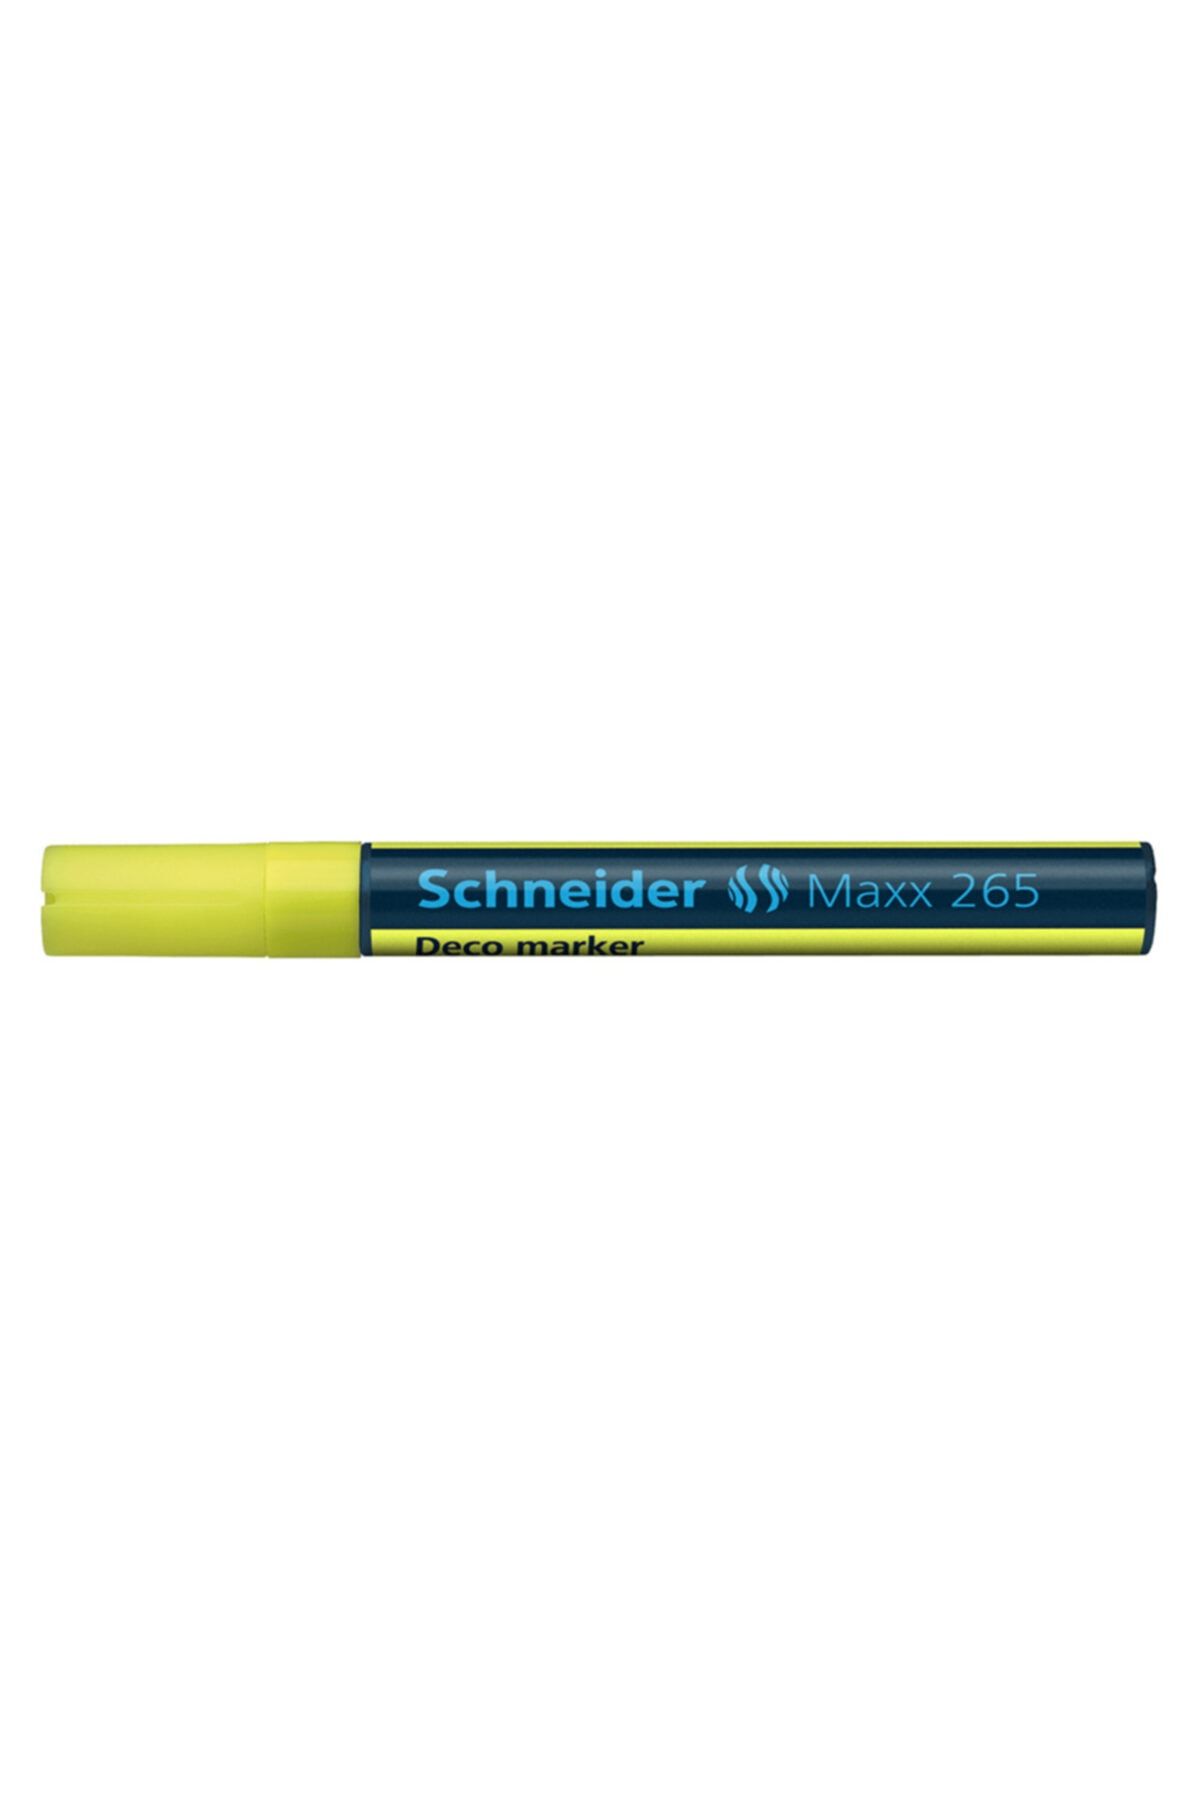 KARAKUŞ OYUNCAK Schneıder Maxx 265 Deco Marker 2-3 mm Neon Sarı Scm401